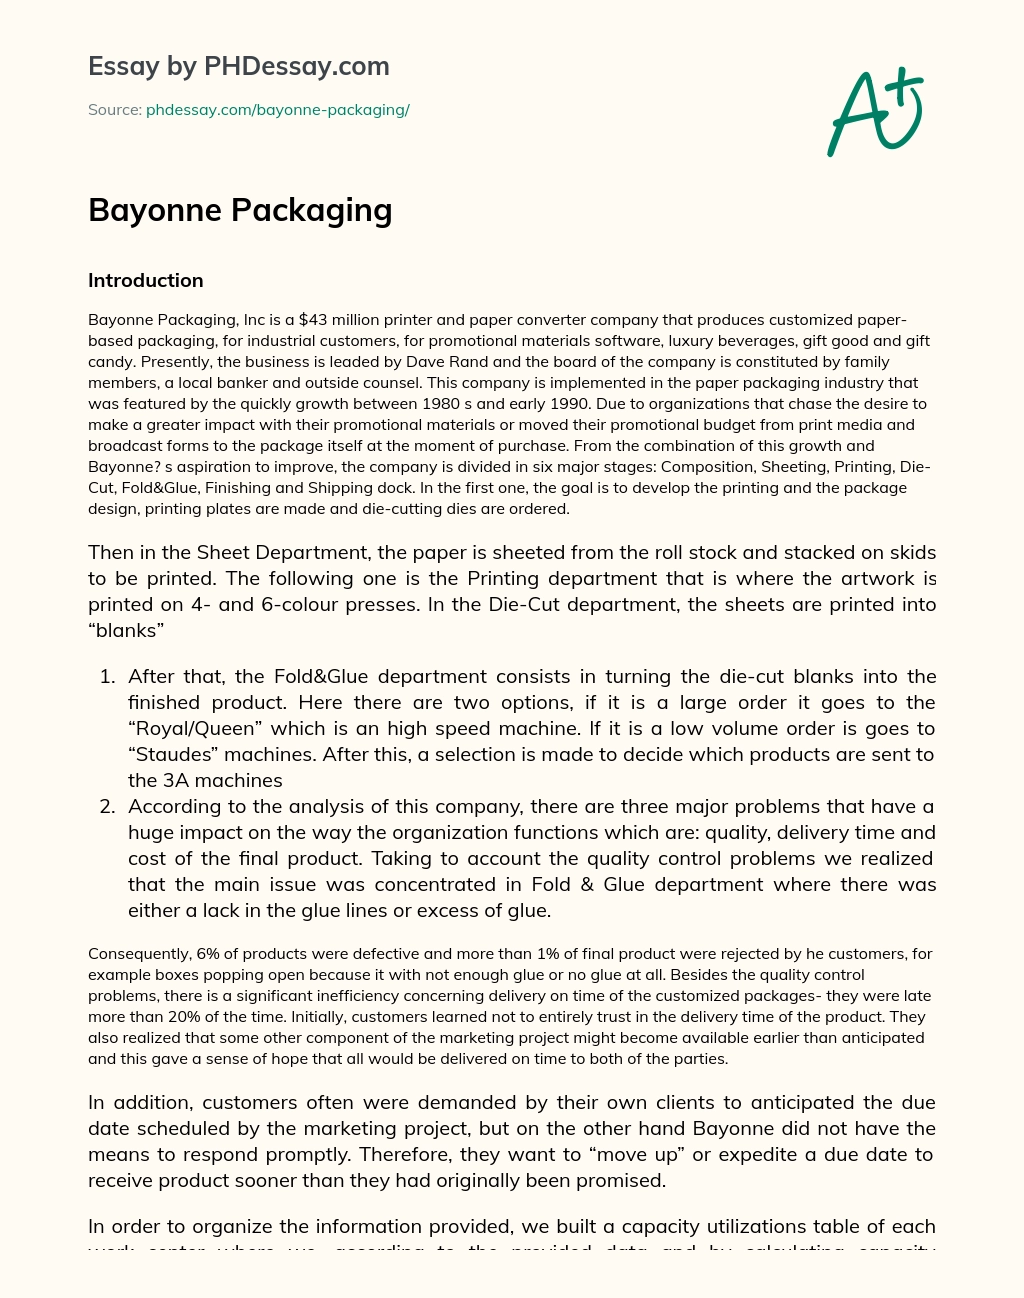 Bayonne Packaging essay